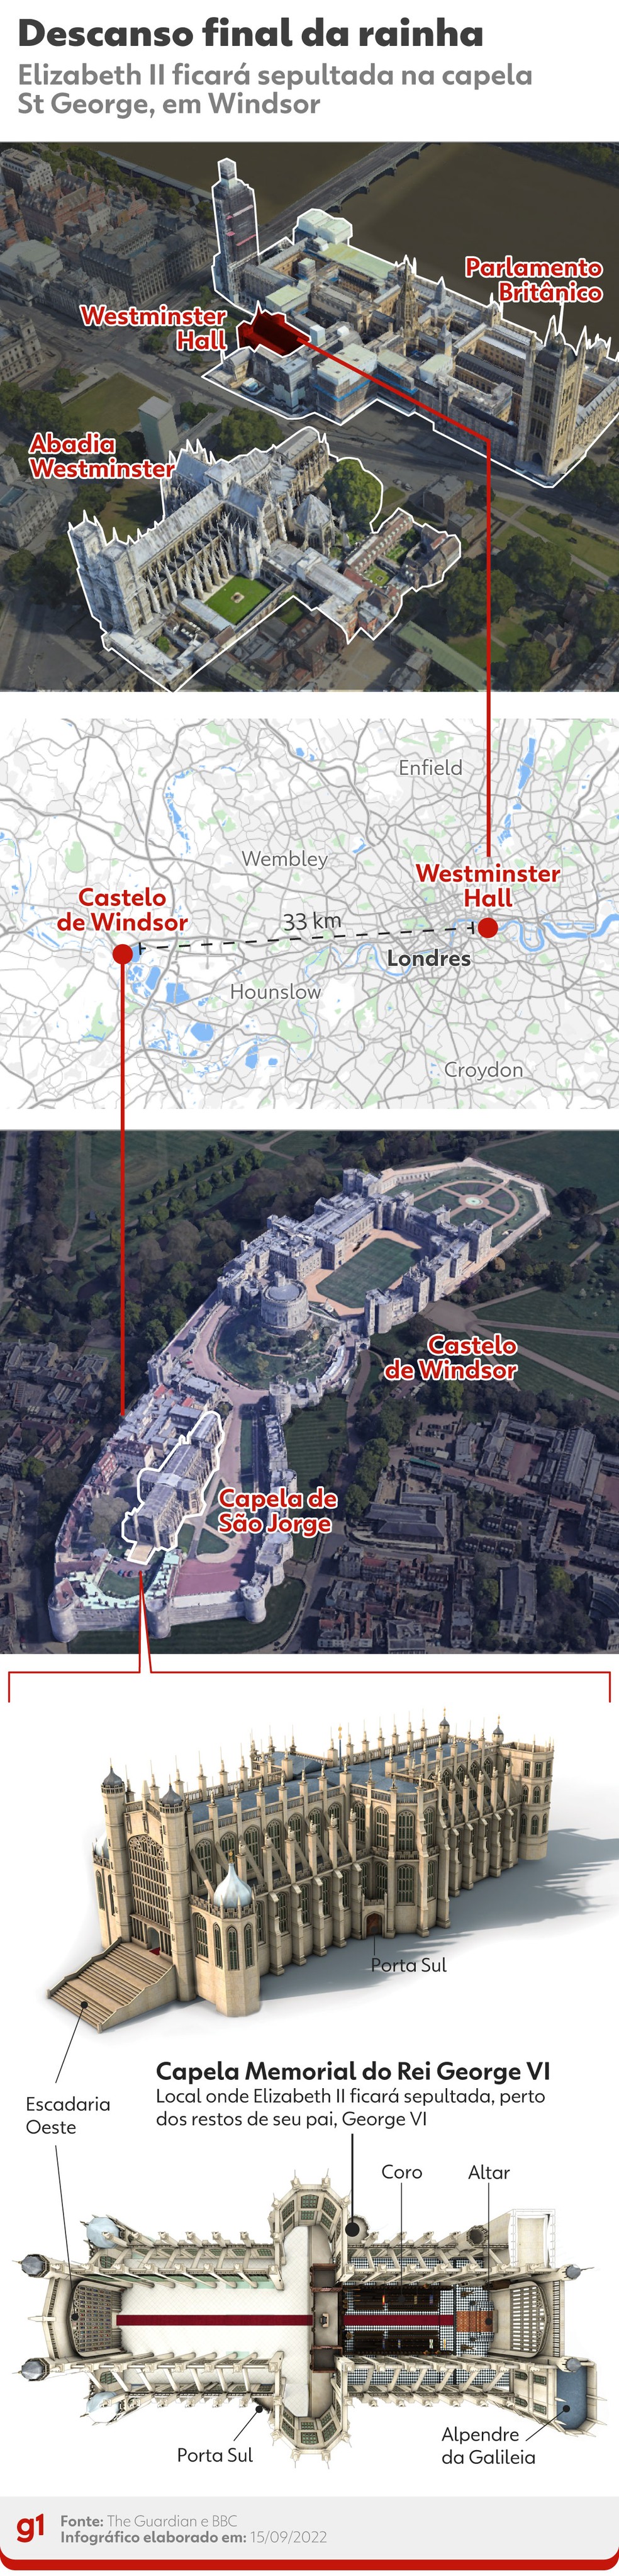 Mapa mostra local onde será o sepultamento da rainha Elizabeth II em Londres — Foto: Arte g1